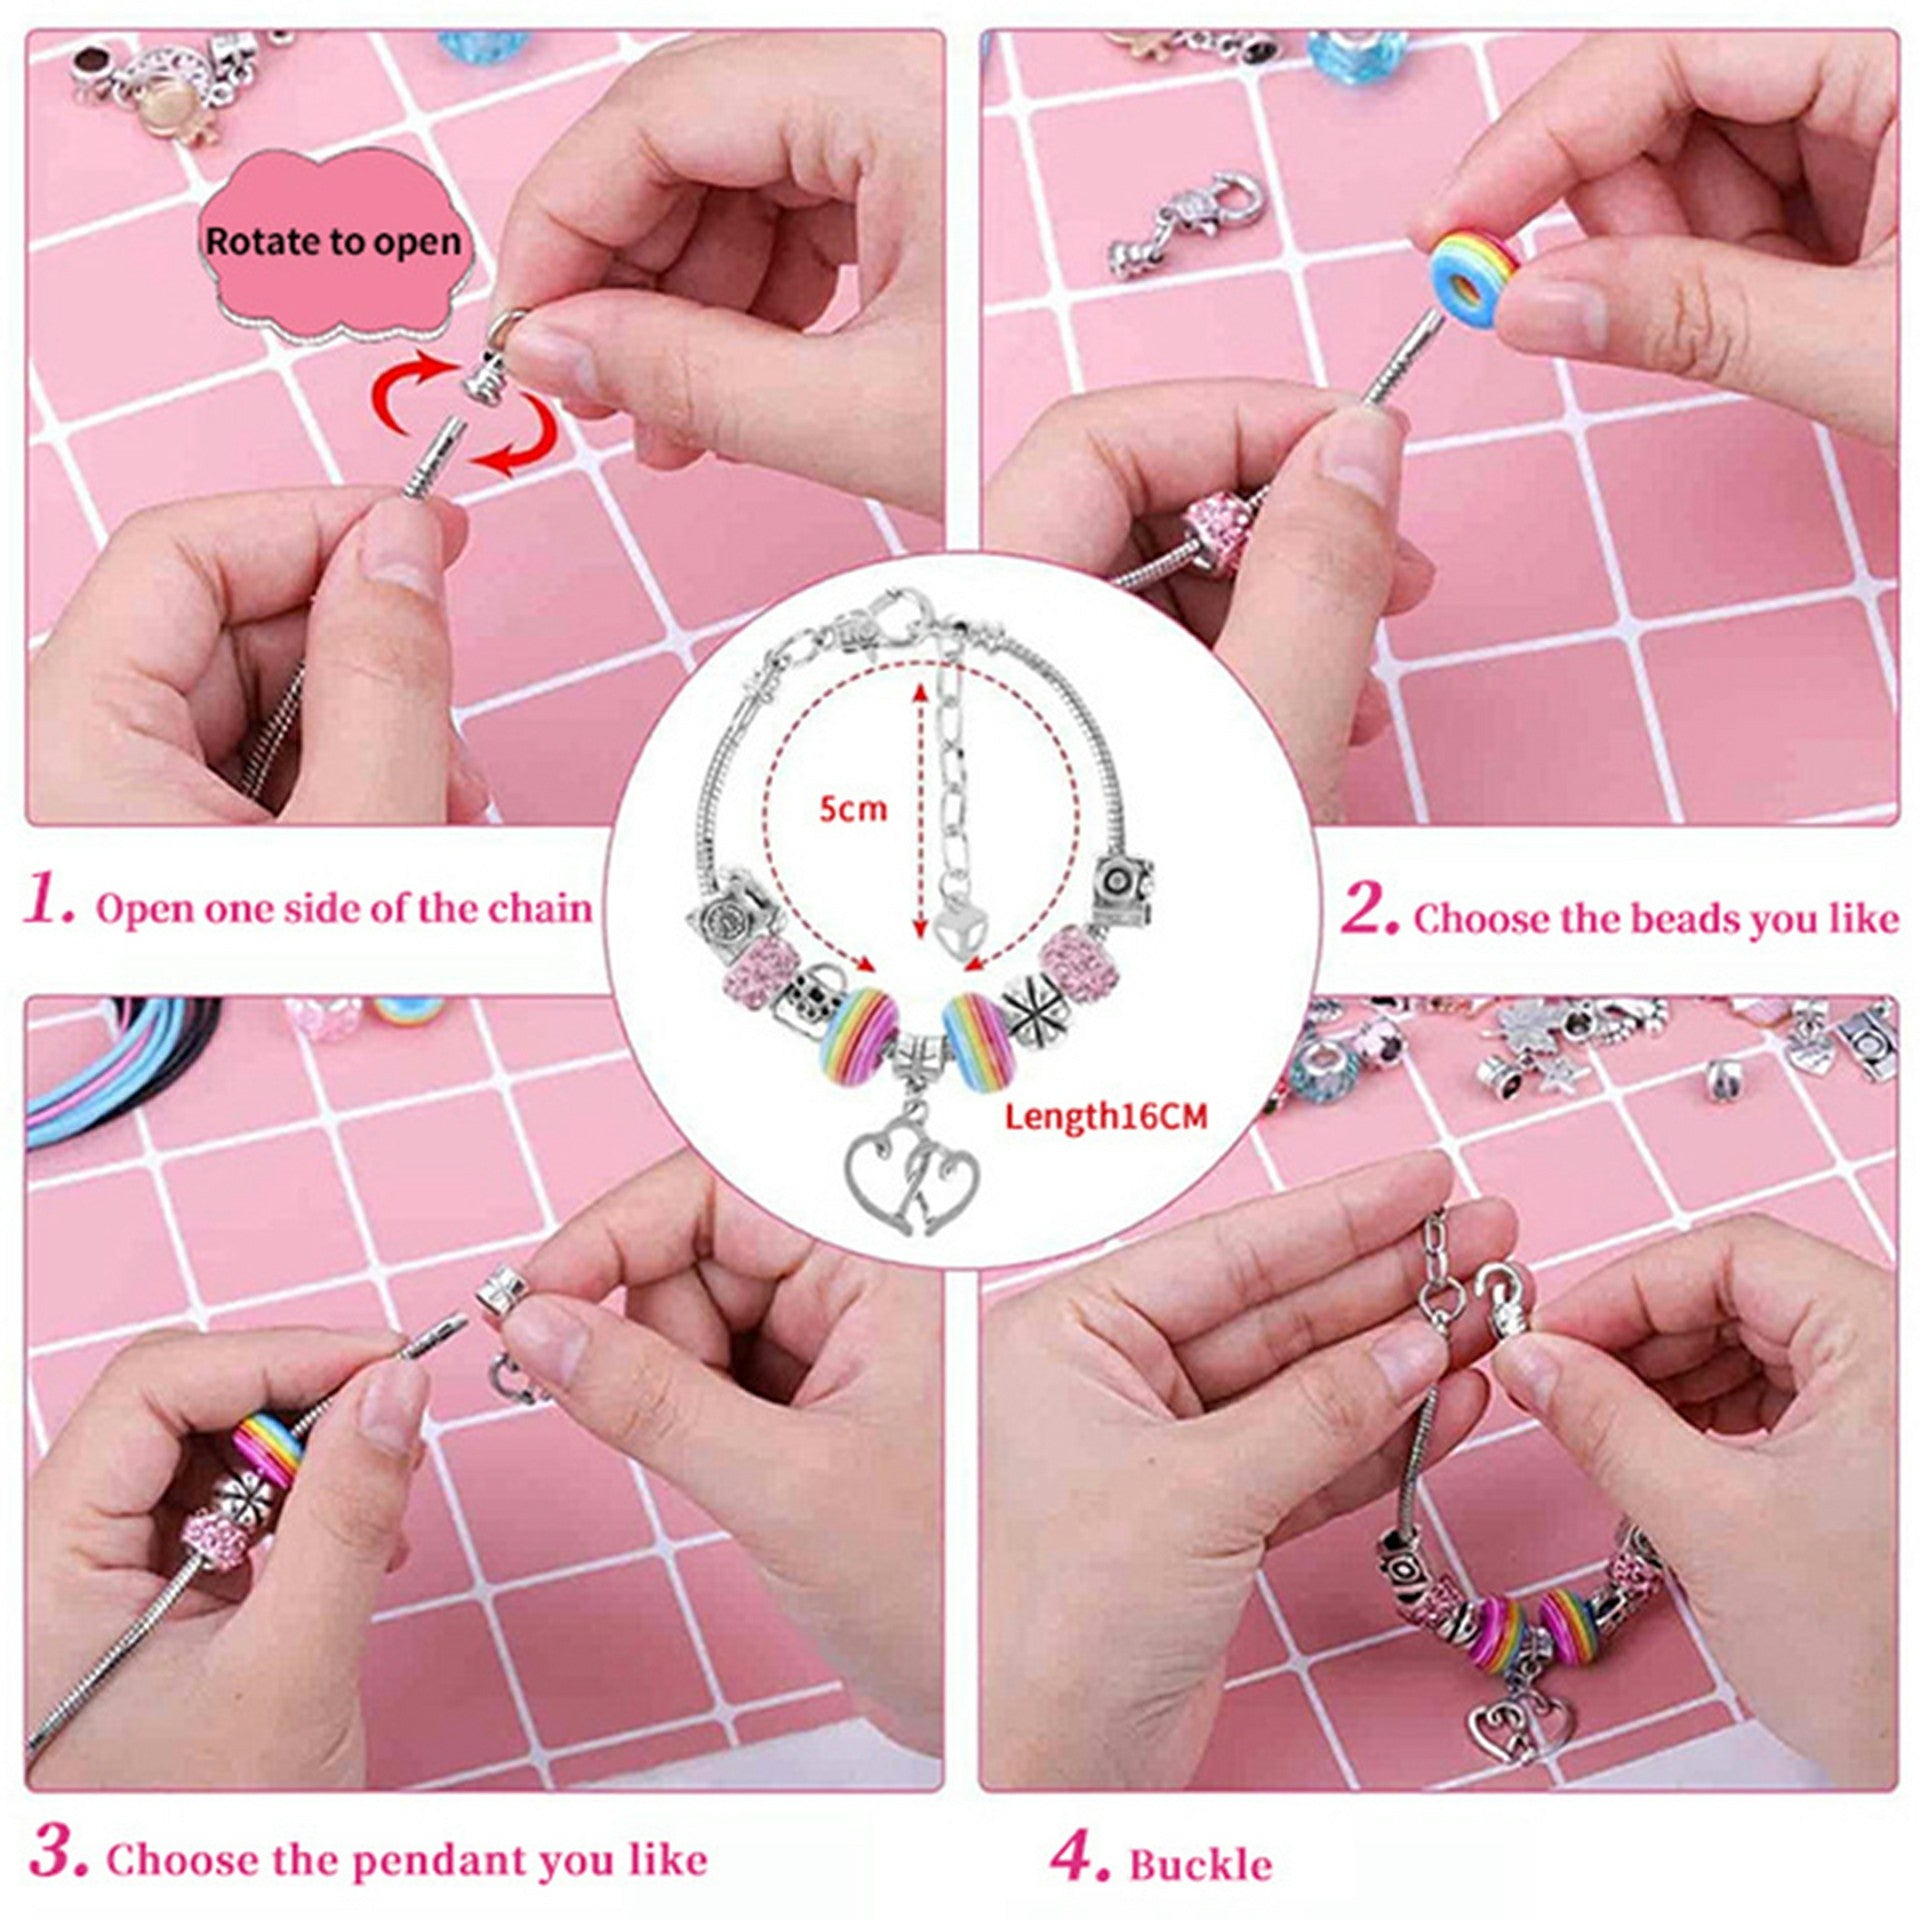 140Pcs / Set Kids Girls DIY Jewellery Craft Bracelet Making Supplies Kit with Gift Box - White